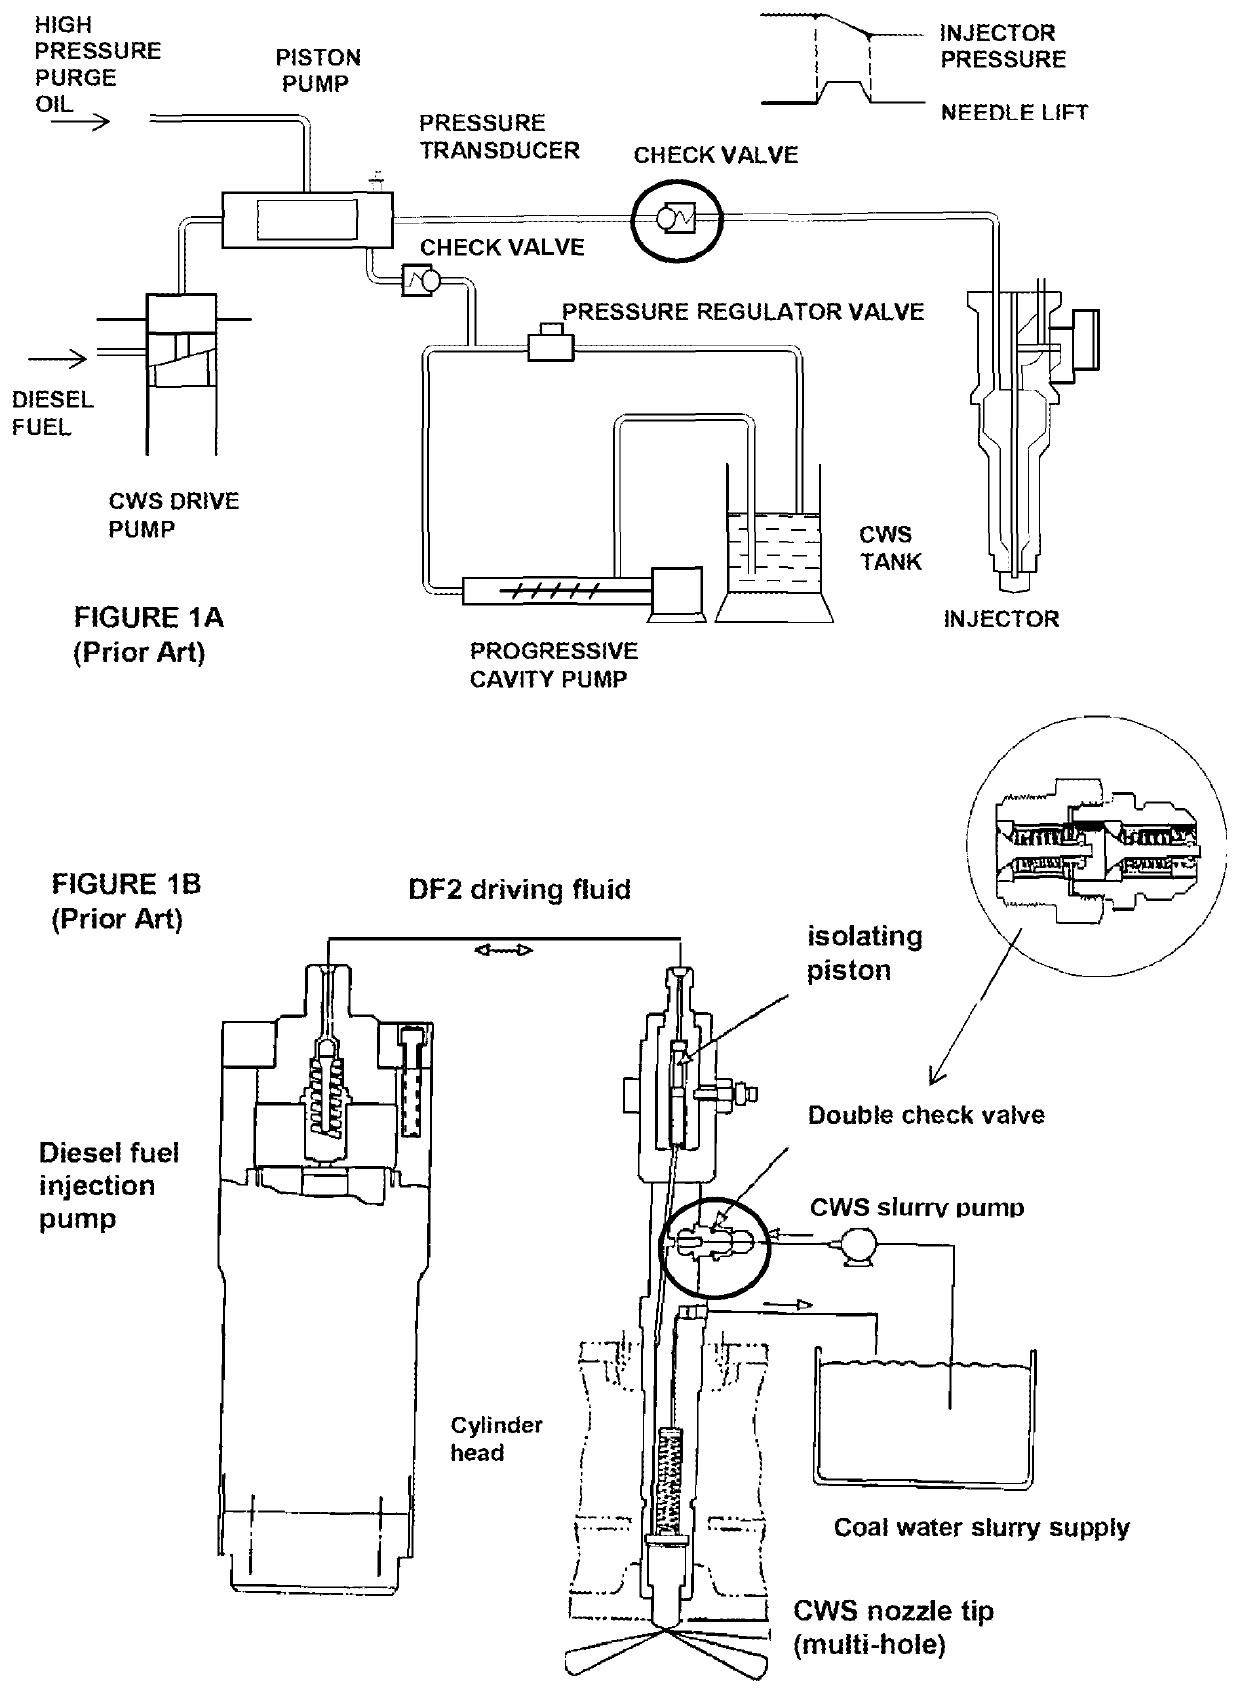 Injector arrangement for diesel engines using slurry or emulsion fuels